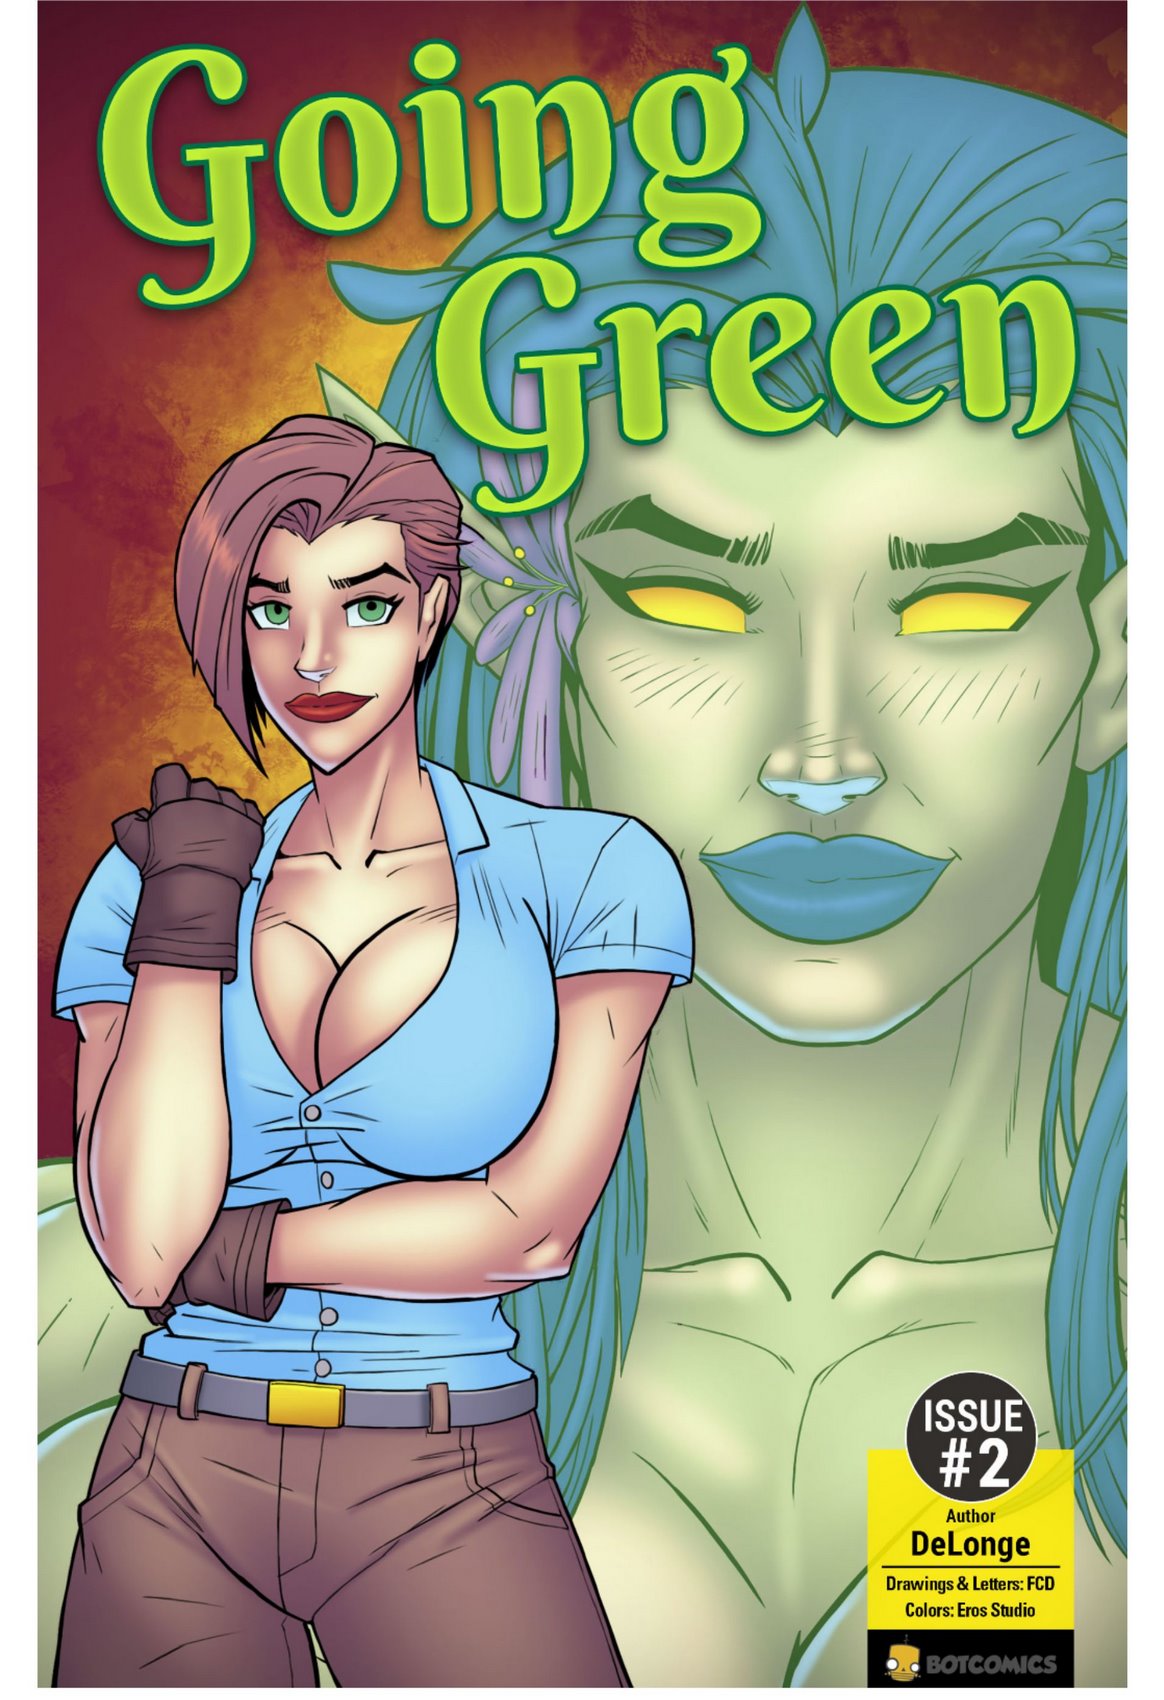 Green green porn comics